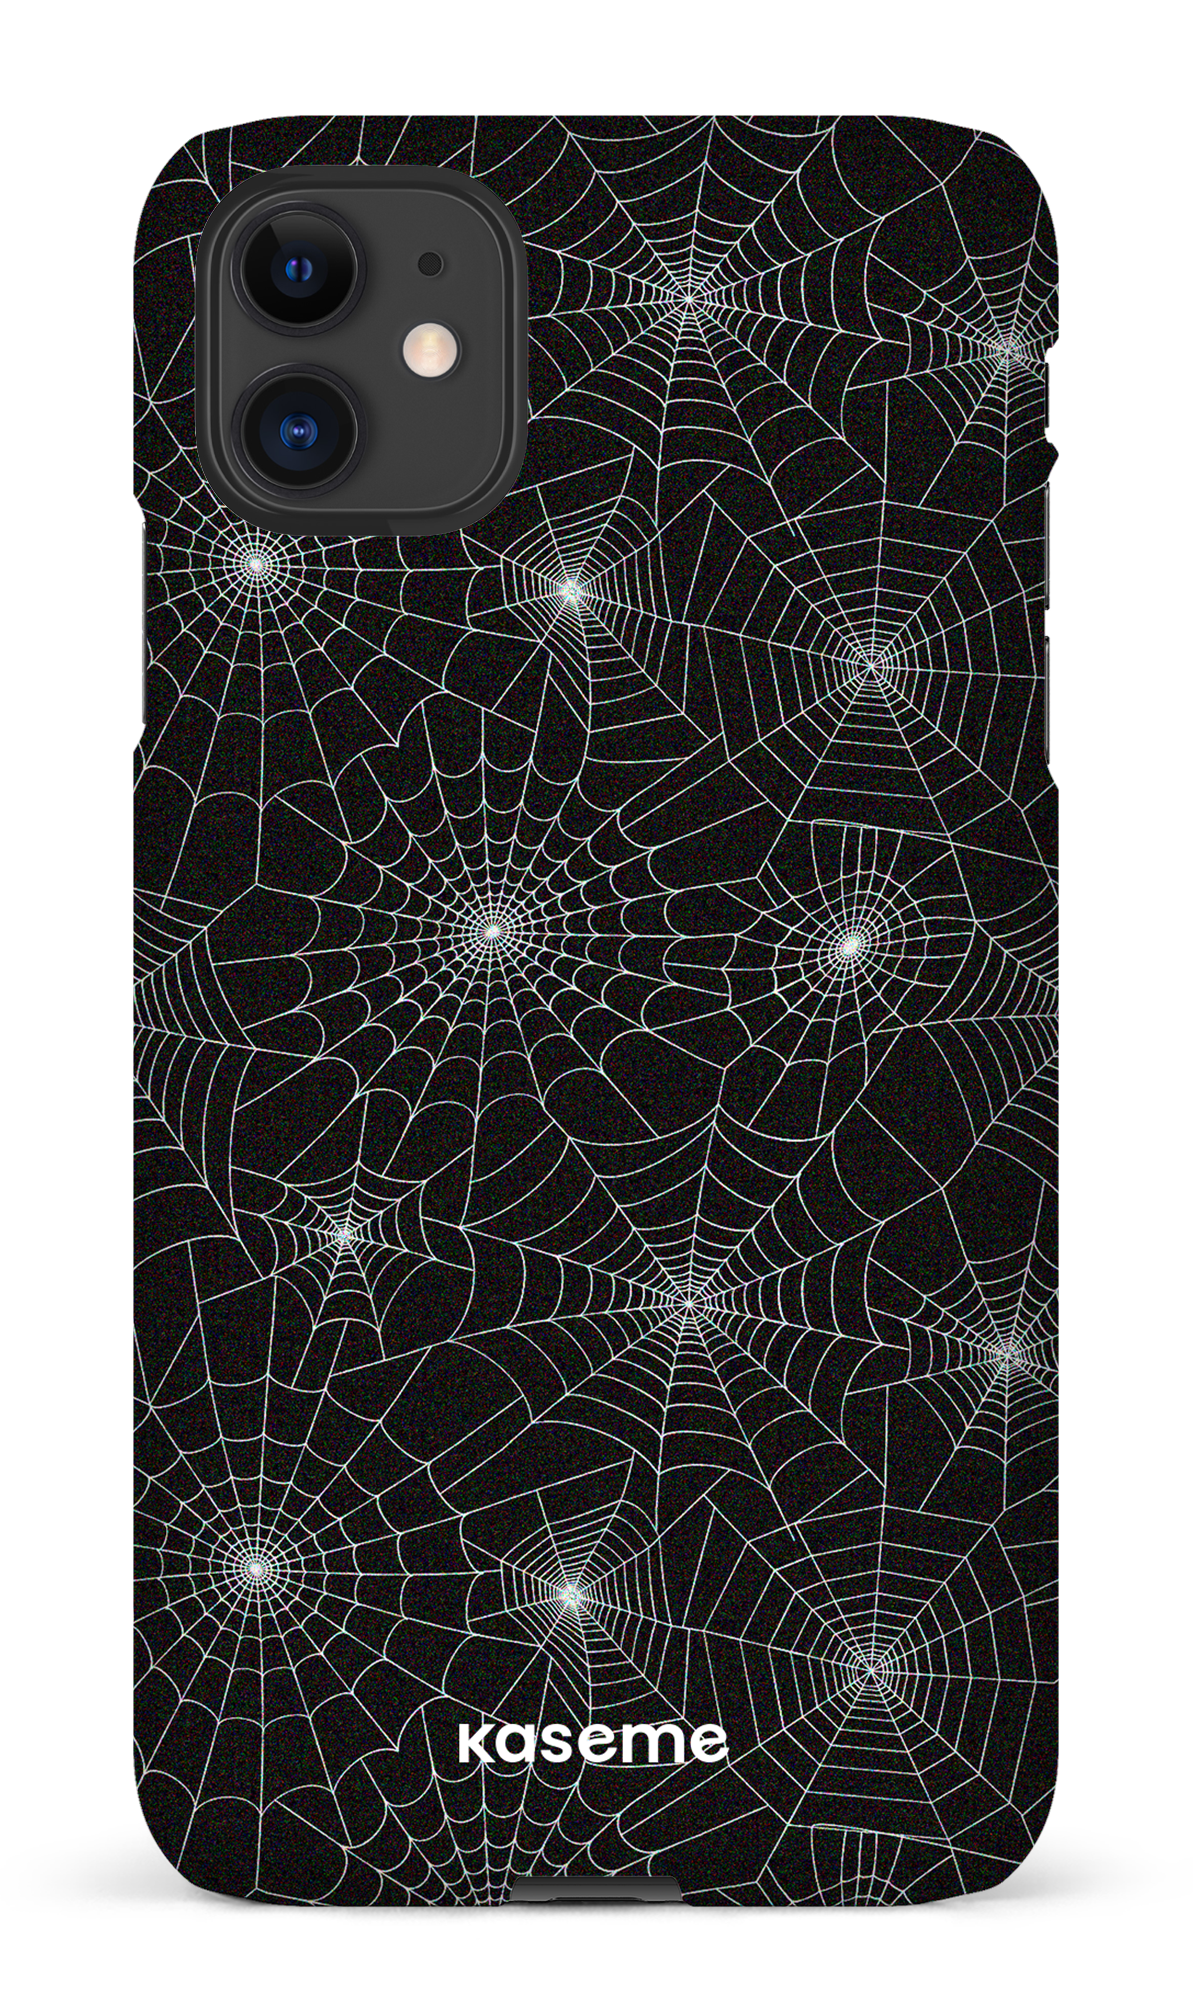 Spider - iPhone 11